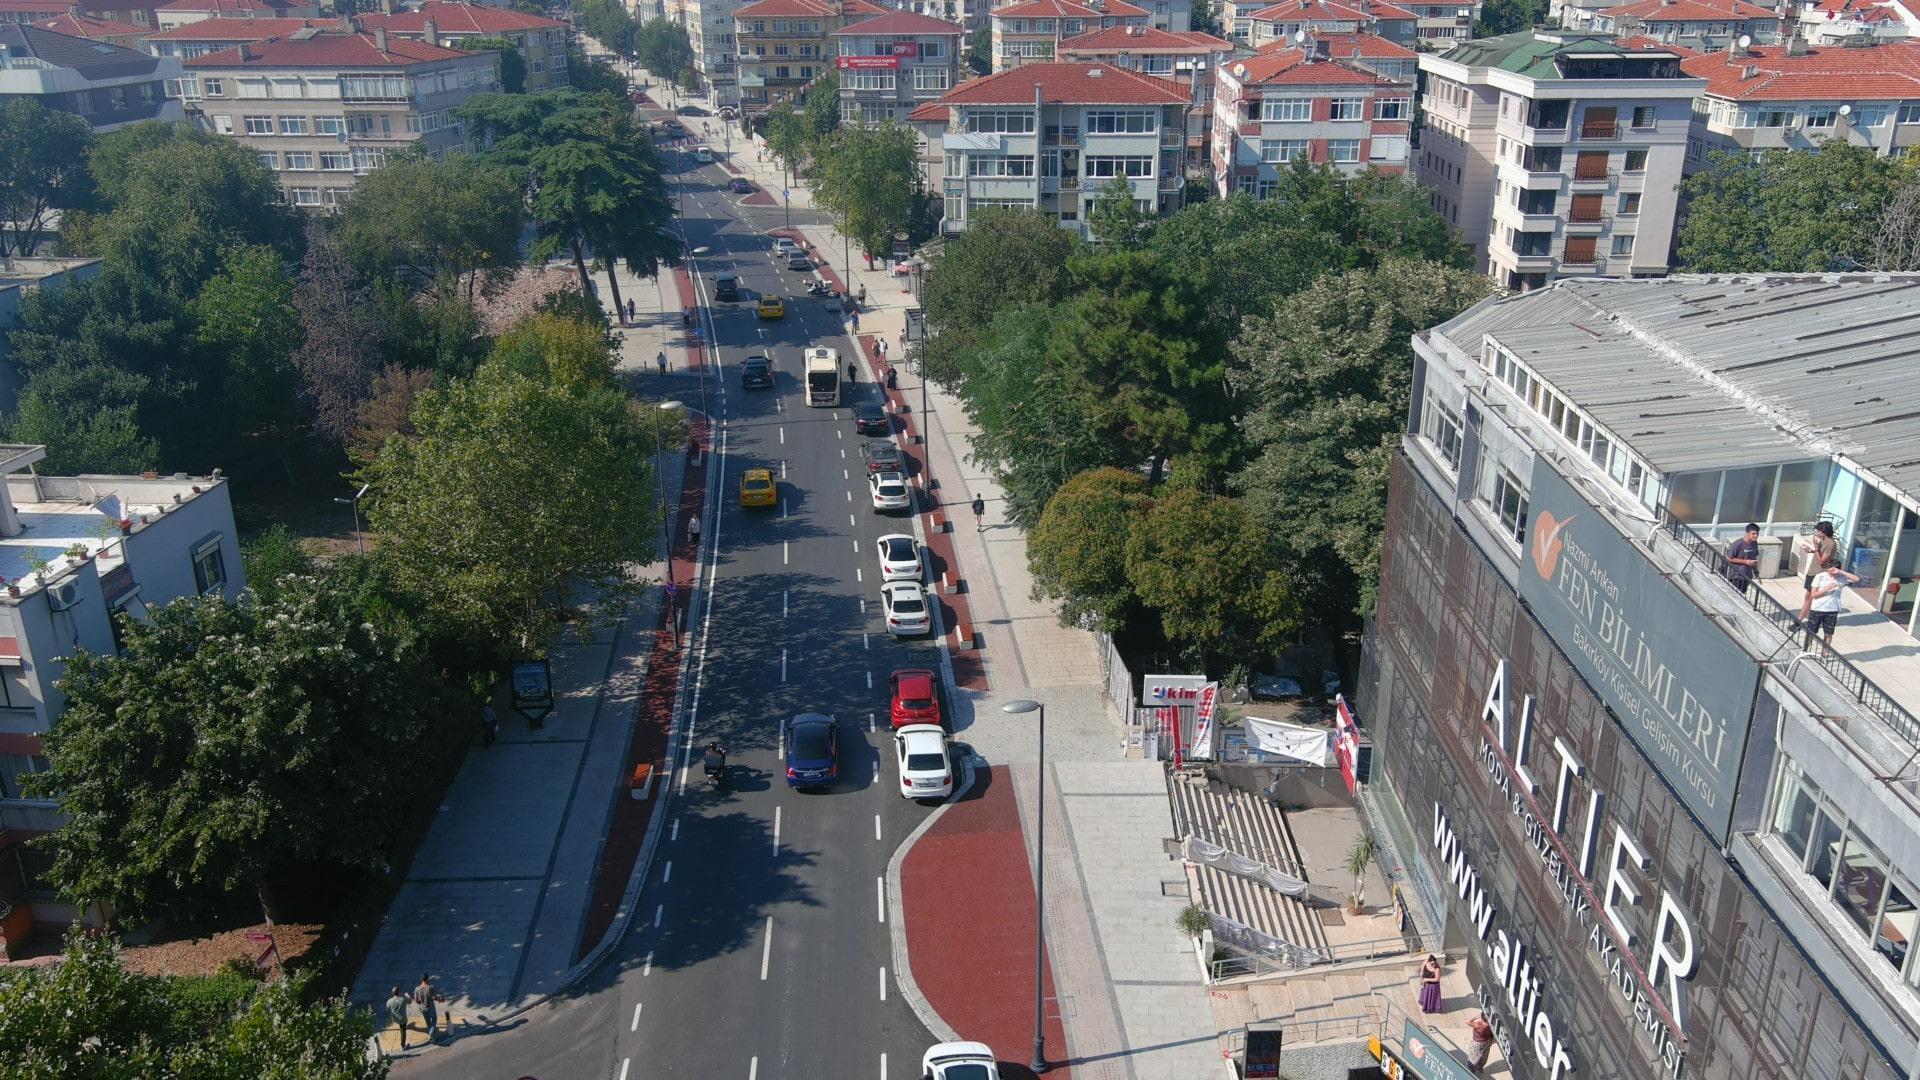 Bakırköy İncirli Street